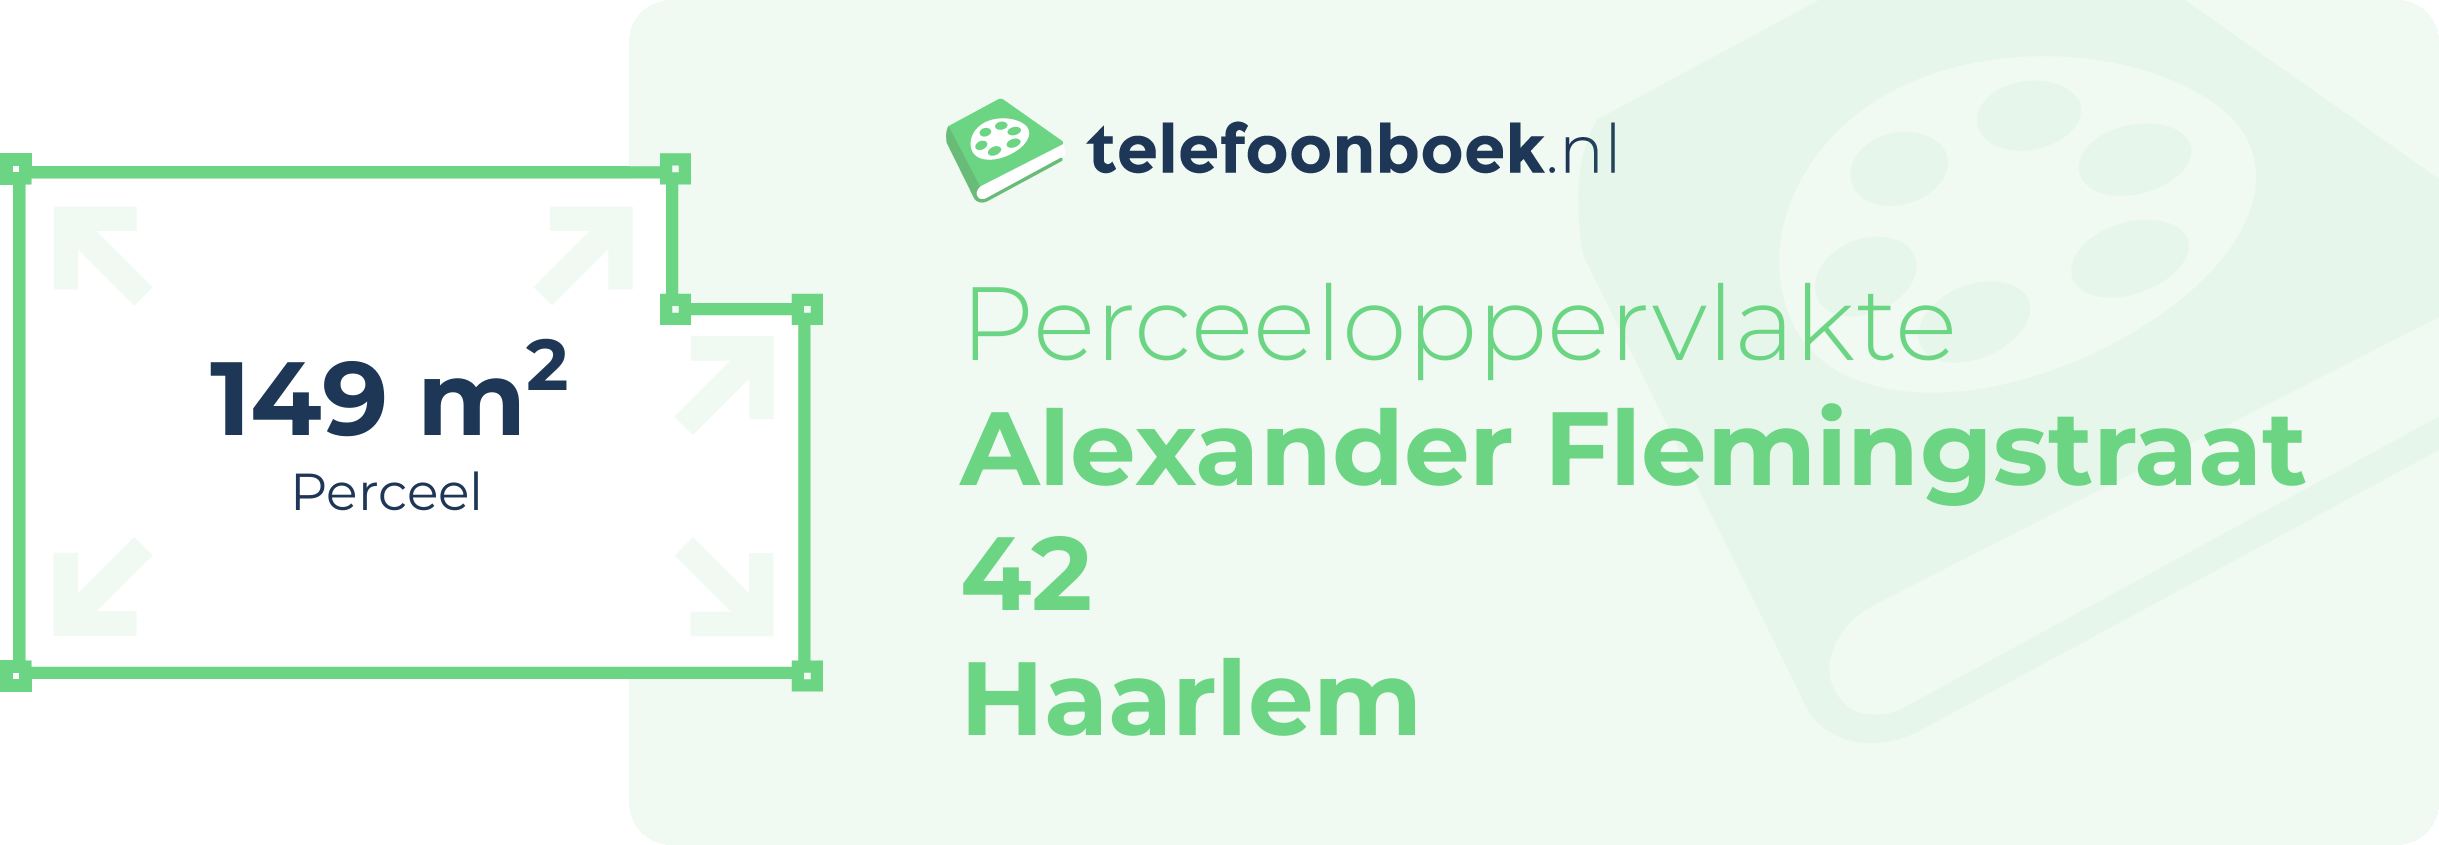 Perceeloppervlakte Alexander Flemingstraat 42 Haarlem